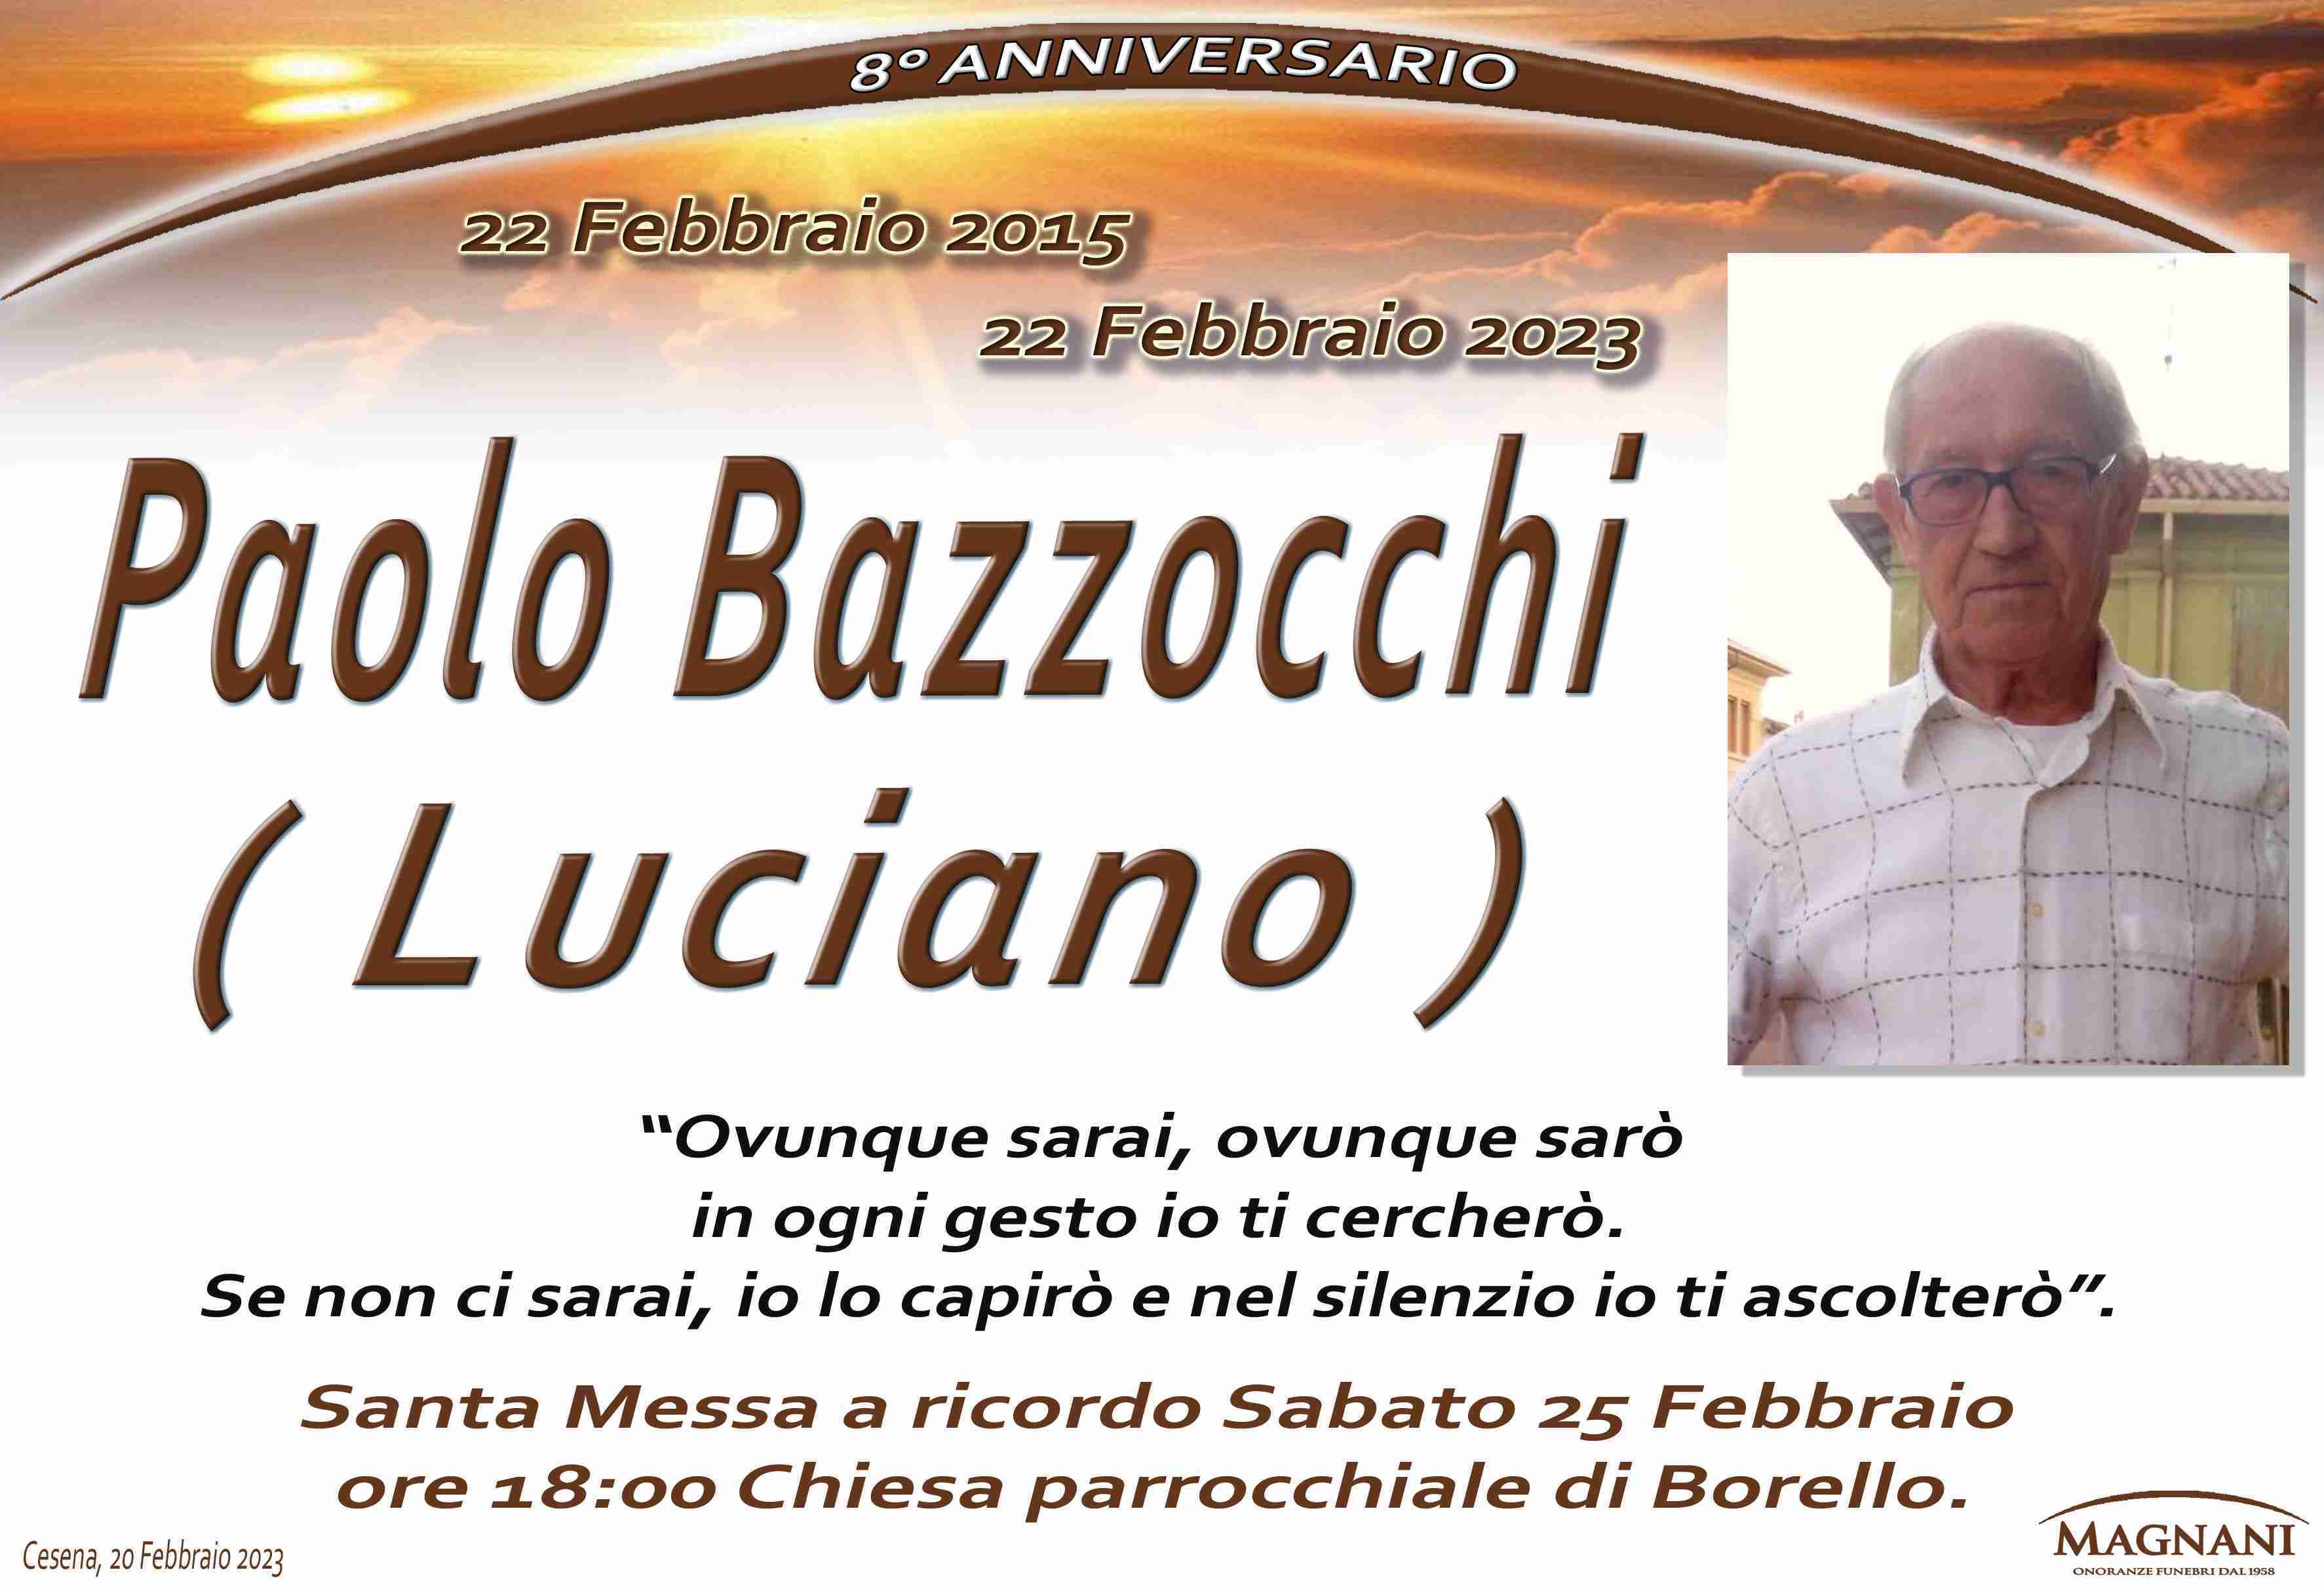 Paolo Bazzocchi